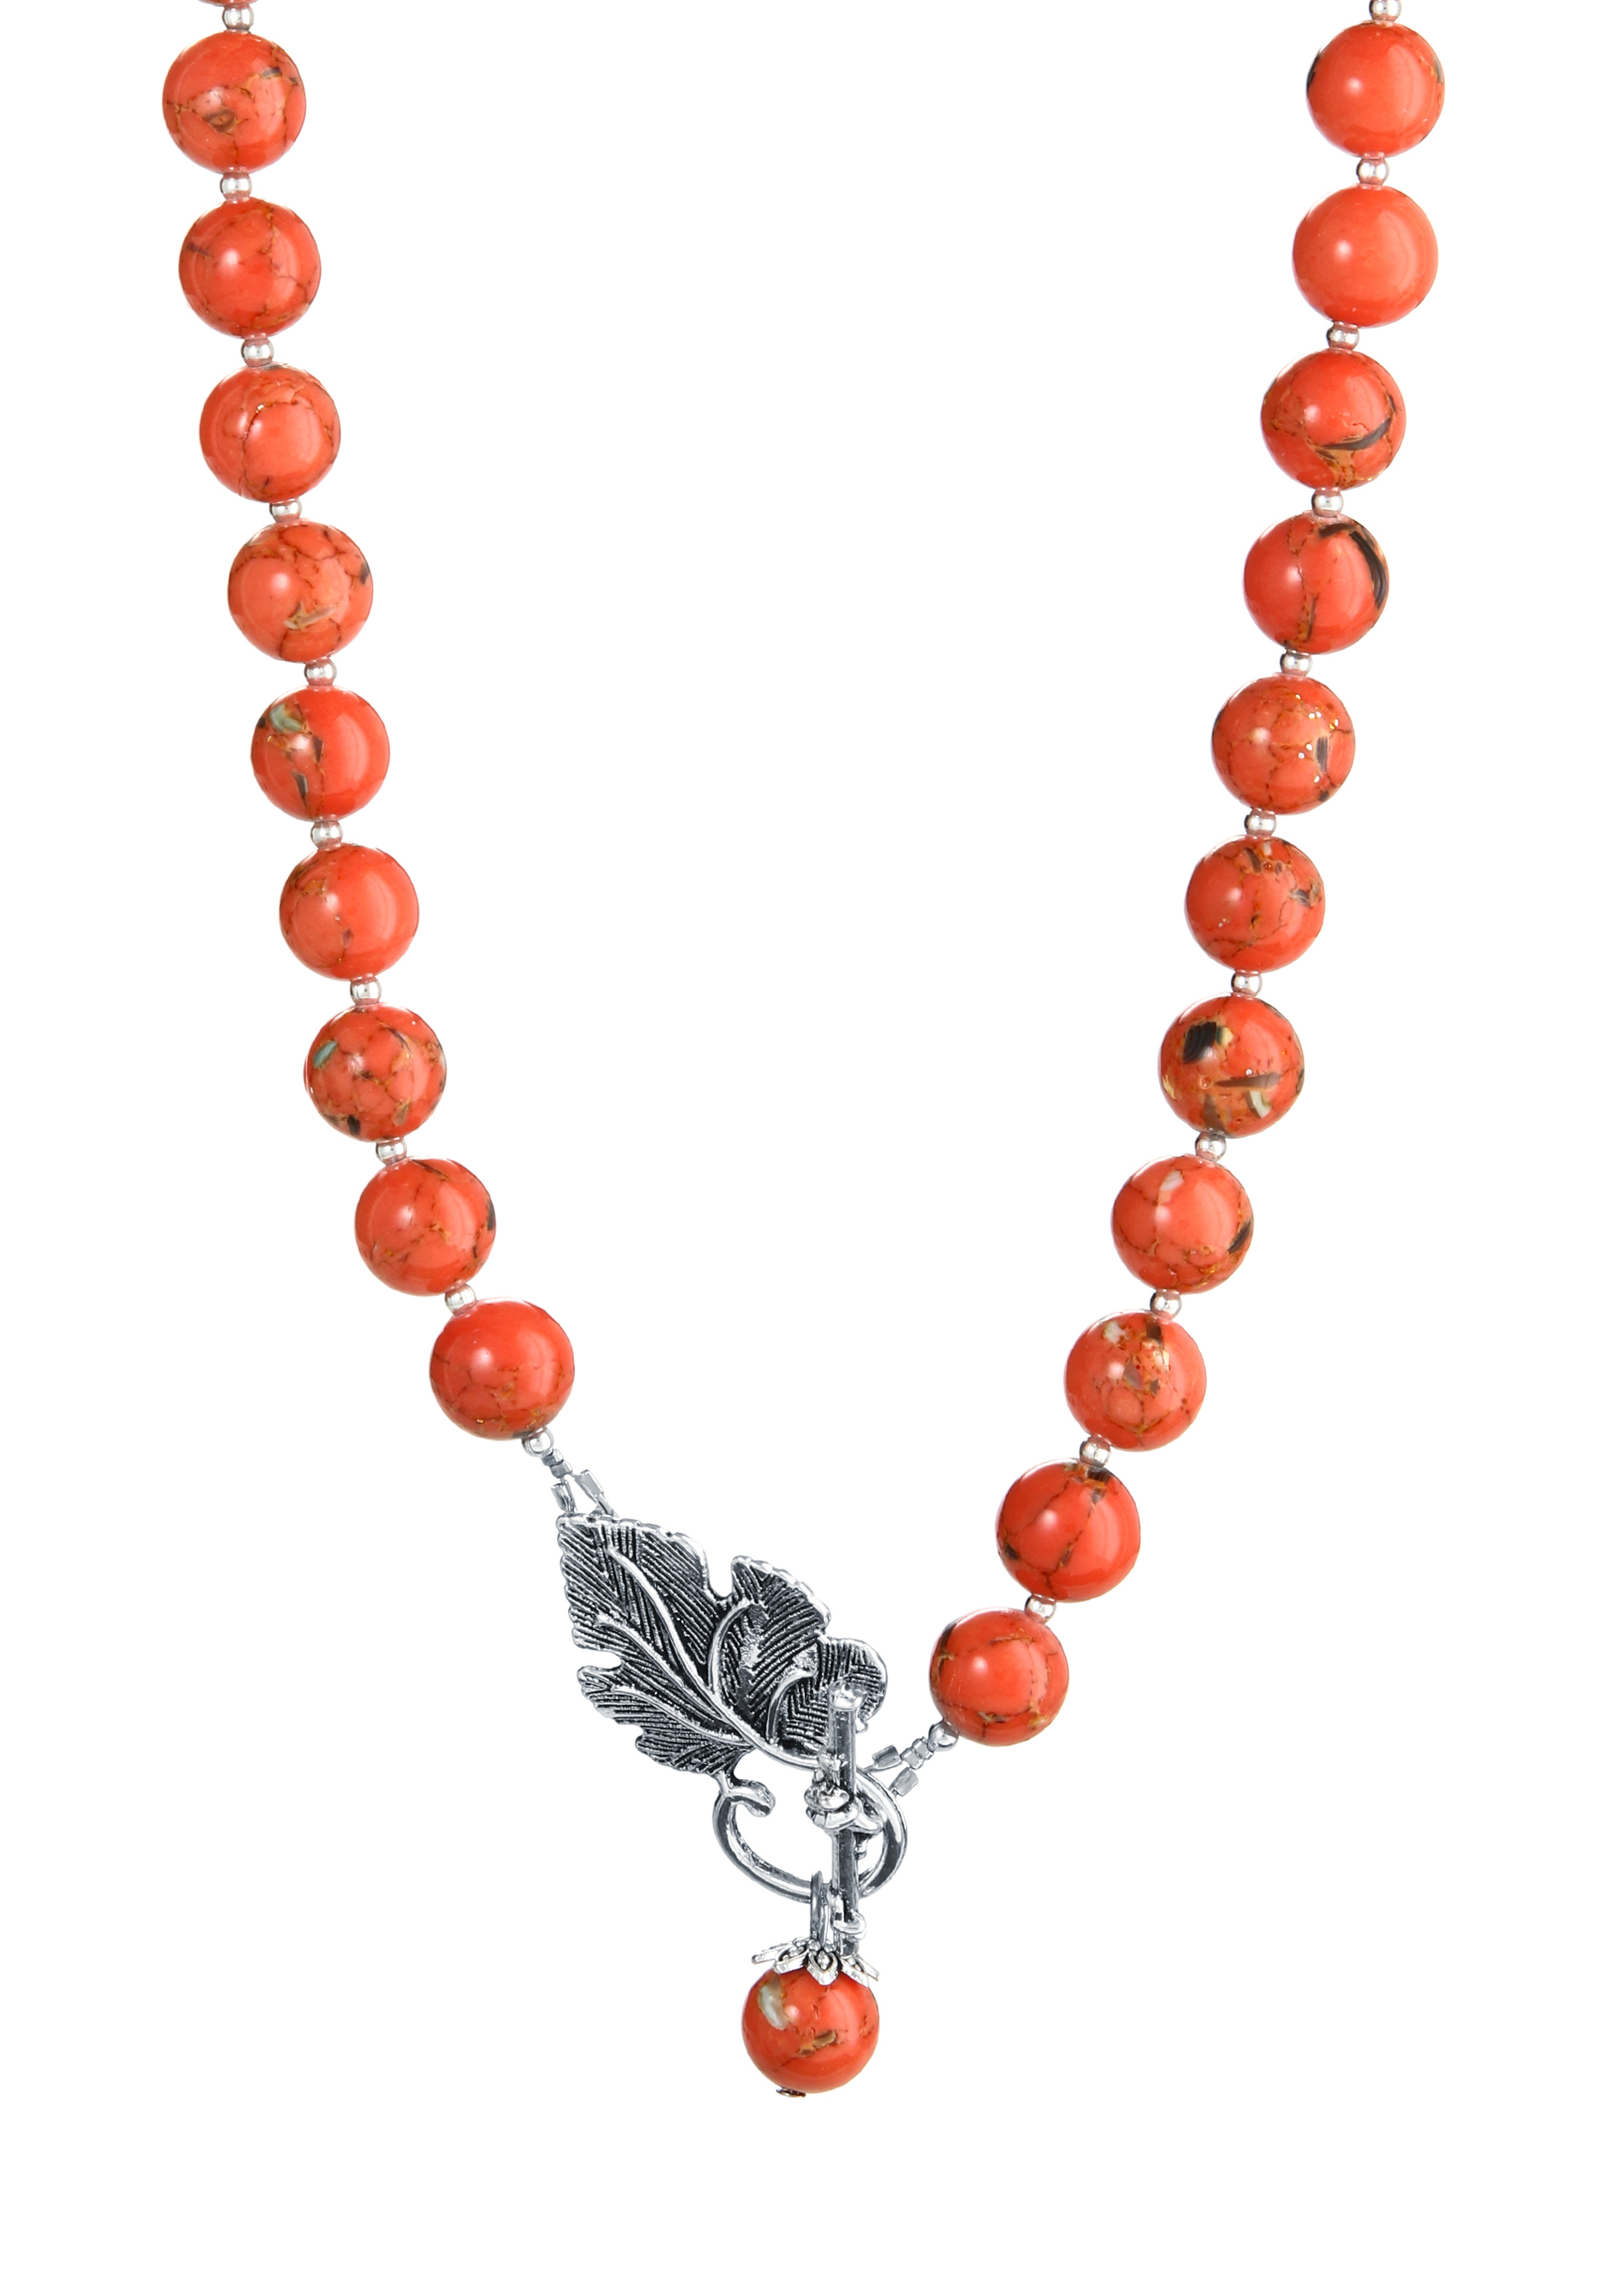 Колье "Изобильная жизнь" Apsara, цвет оранжевый, размер 50 матине - фото 4